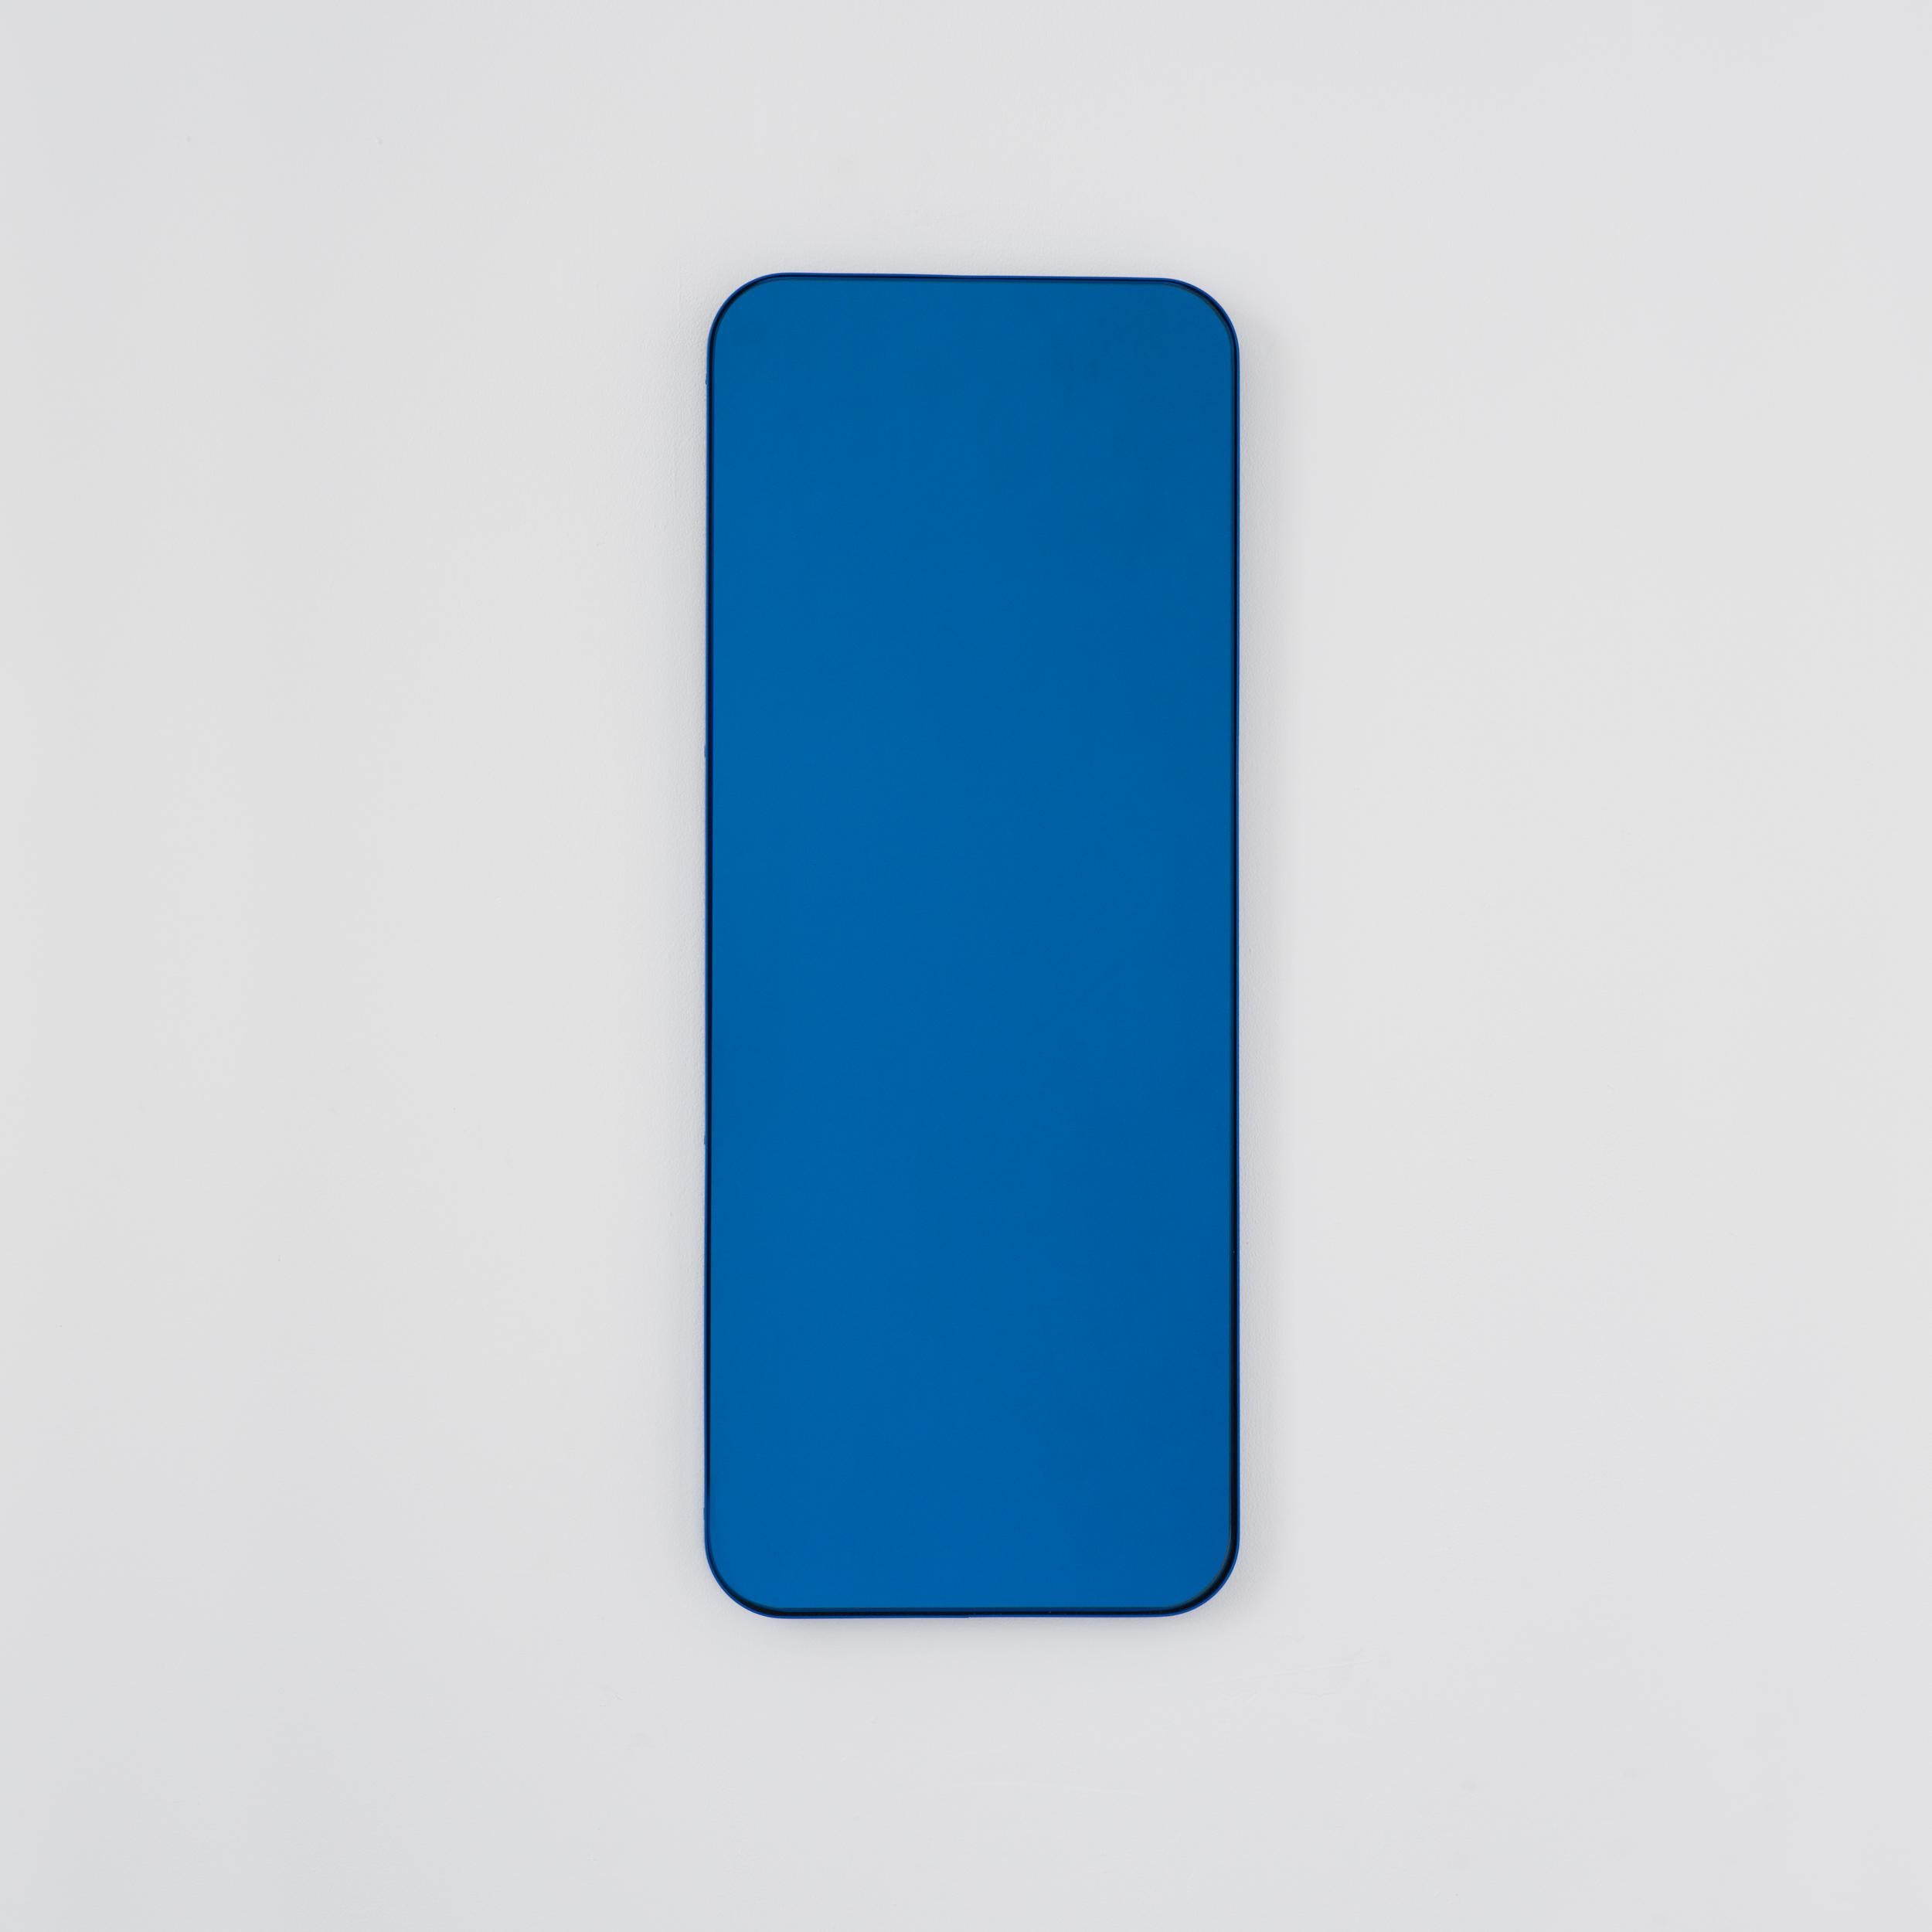 Moderner rechteckiger Spiegel mit einem eleganten blauen Rahmen. Teil der charmanten Quadris Kollektion, entworfen und handgefertigt in London, UK. 

Die Lieferung erfolgt mit einer speziellen Z-Stange für eine einfache Installation. Auf Anfrage ist